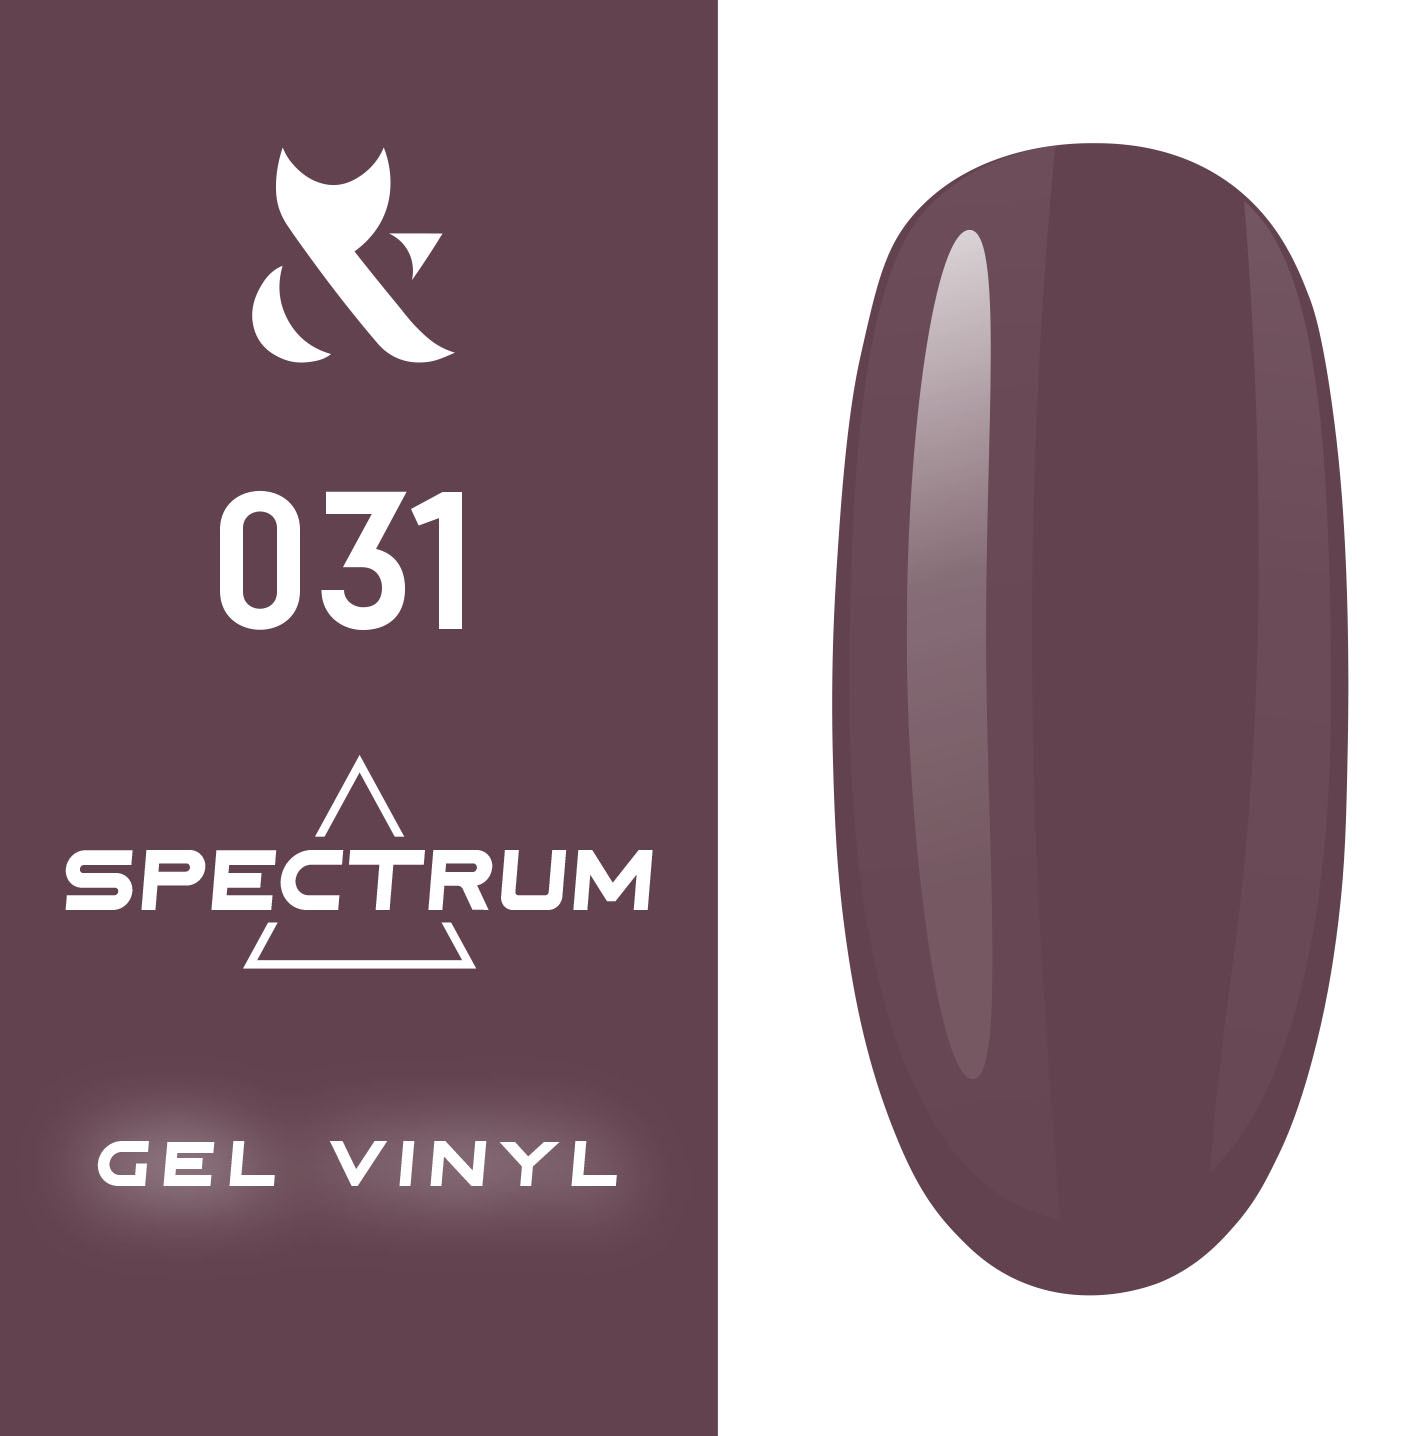 Гель-лак F.O.X Spectrum Gel Vinyl 7 мл № 031 (Цвет: серо-фиолетовый )